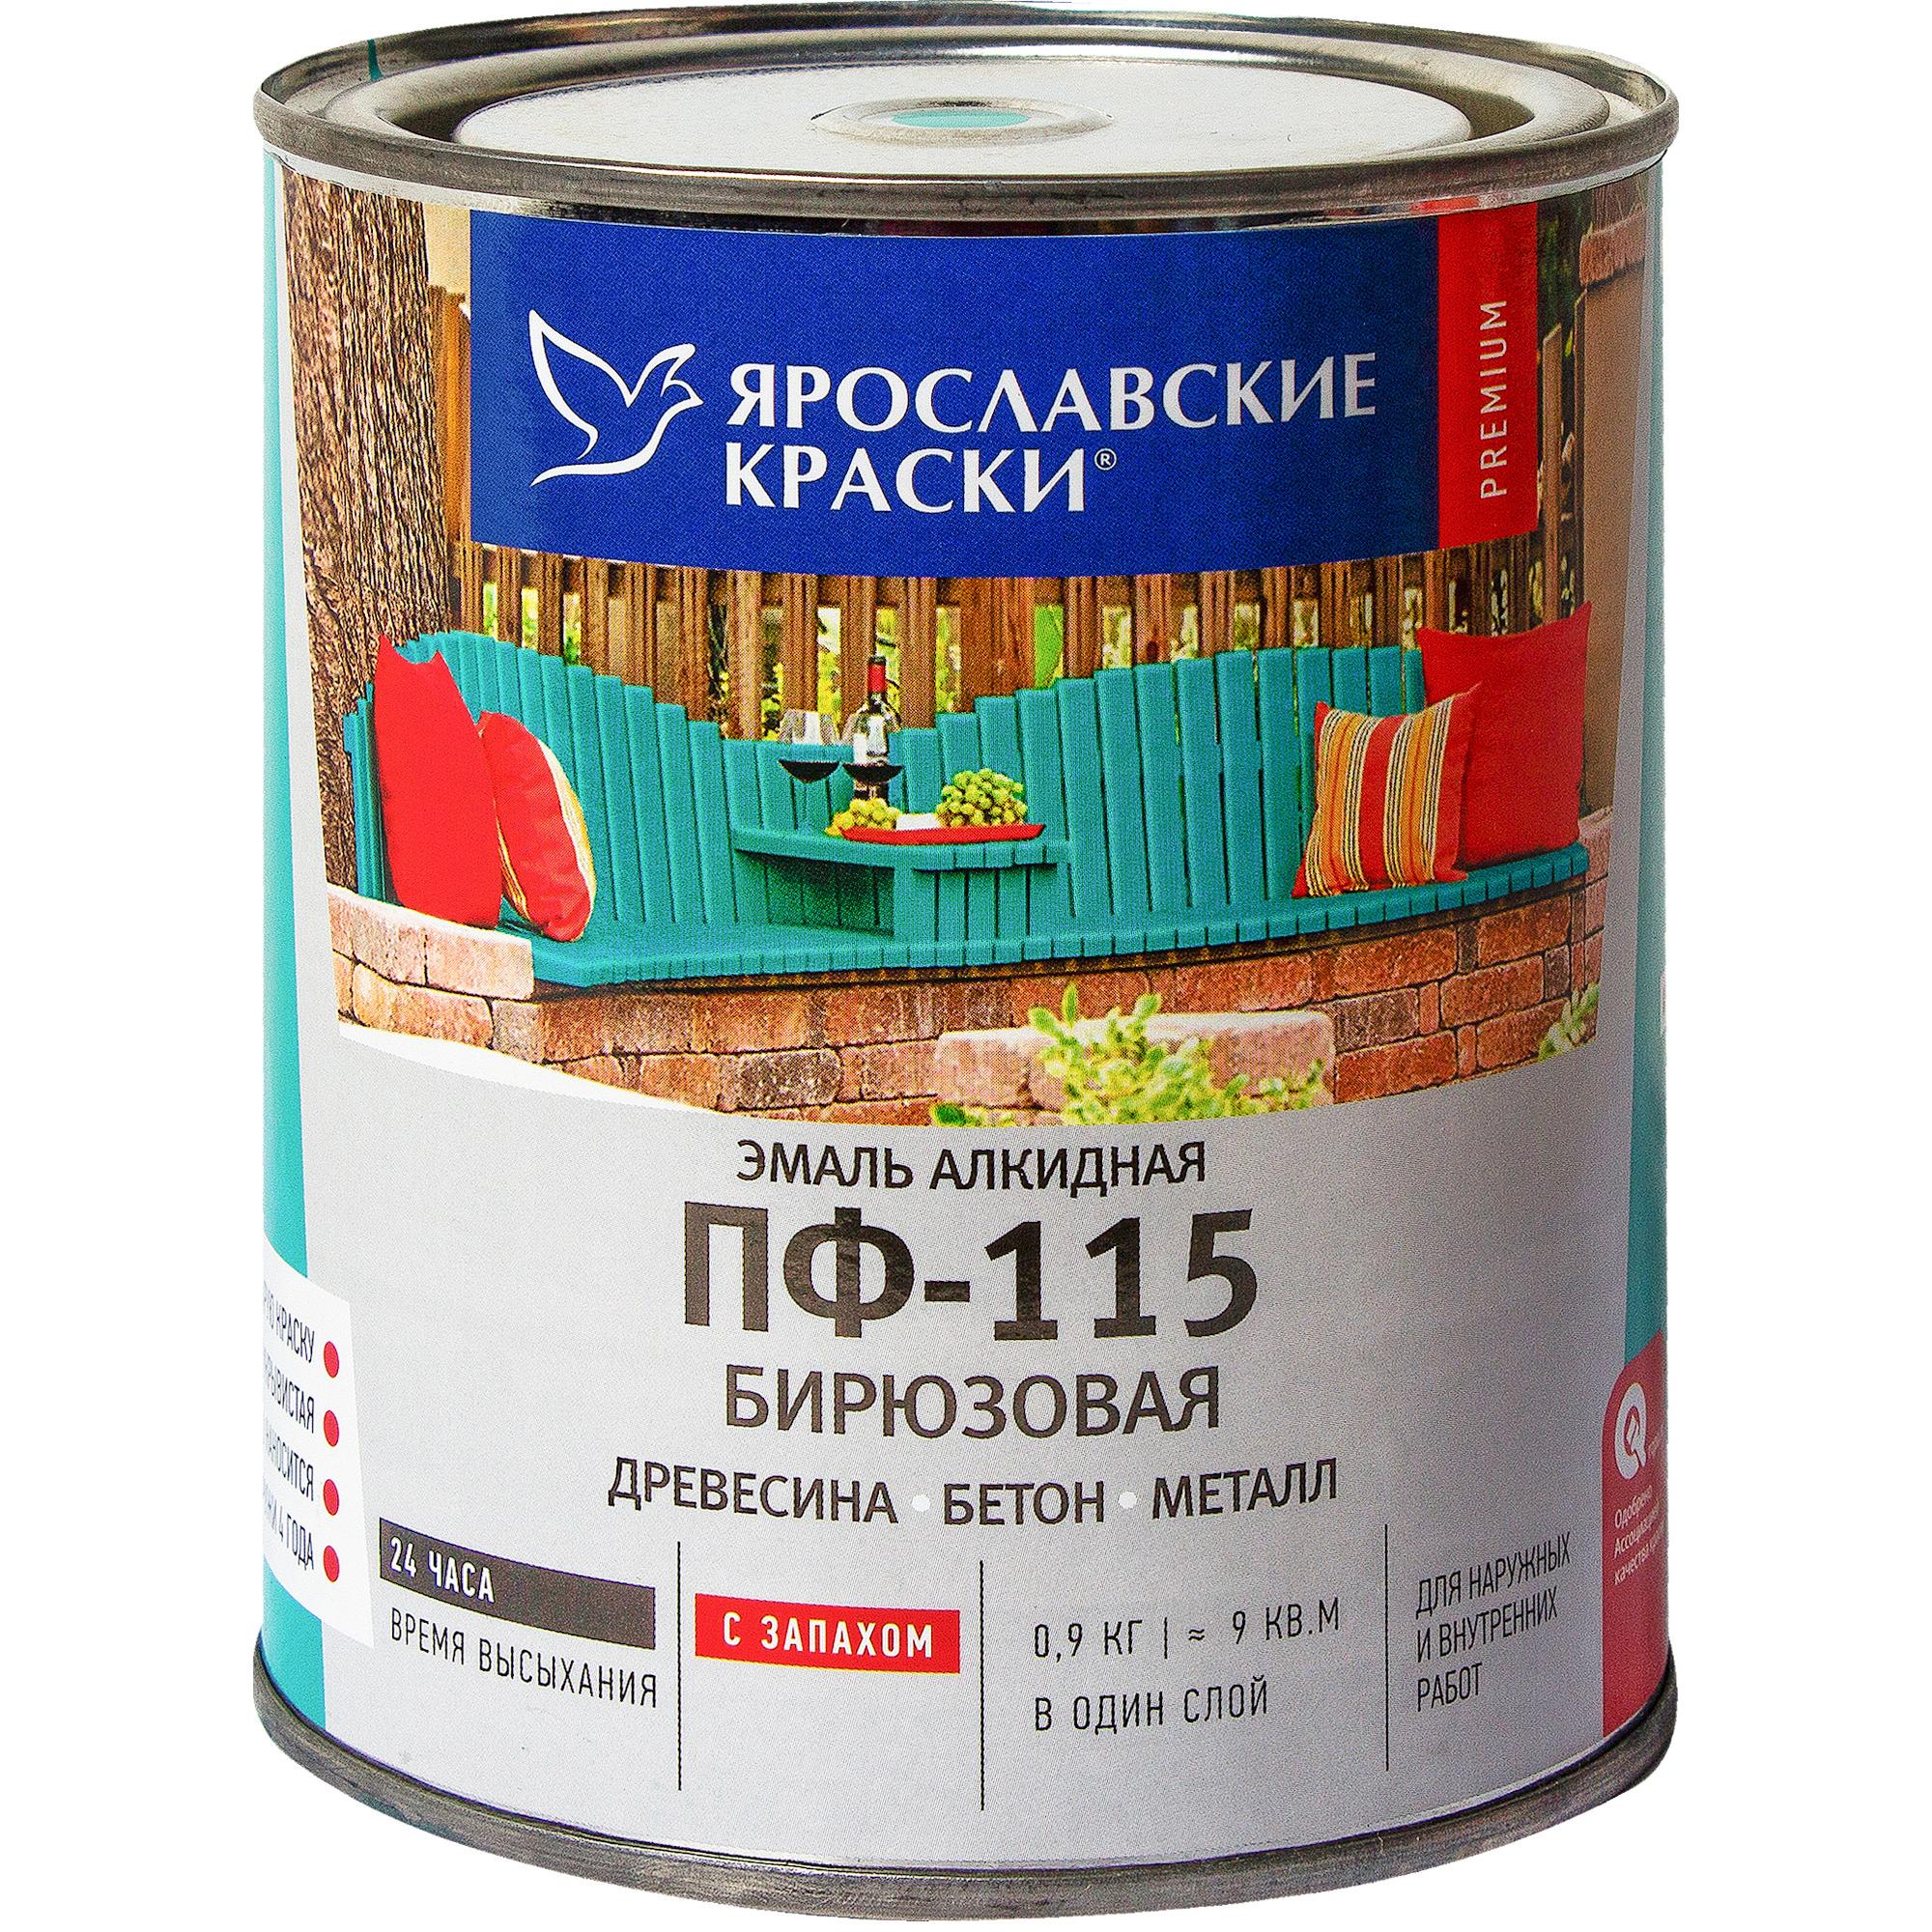  Ярославские краски ПФ-115 глянцевая цвет бирюзовый 0.9 кг .